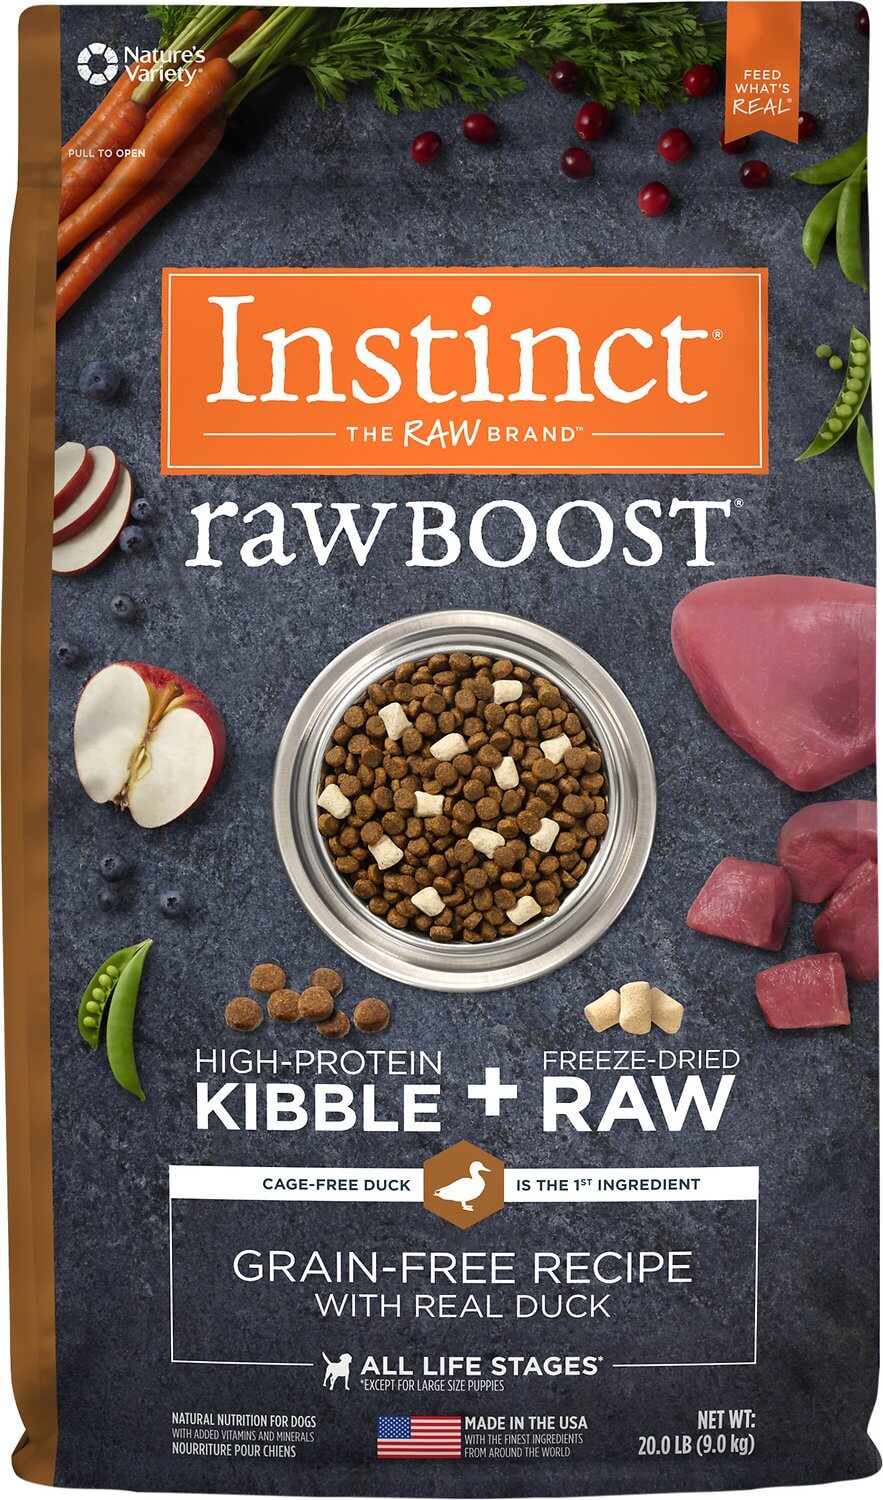 instinct raw mixers